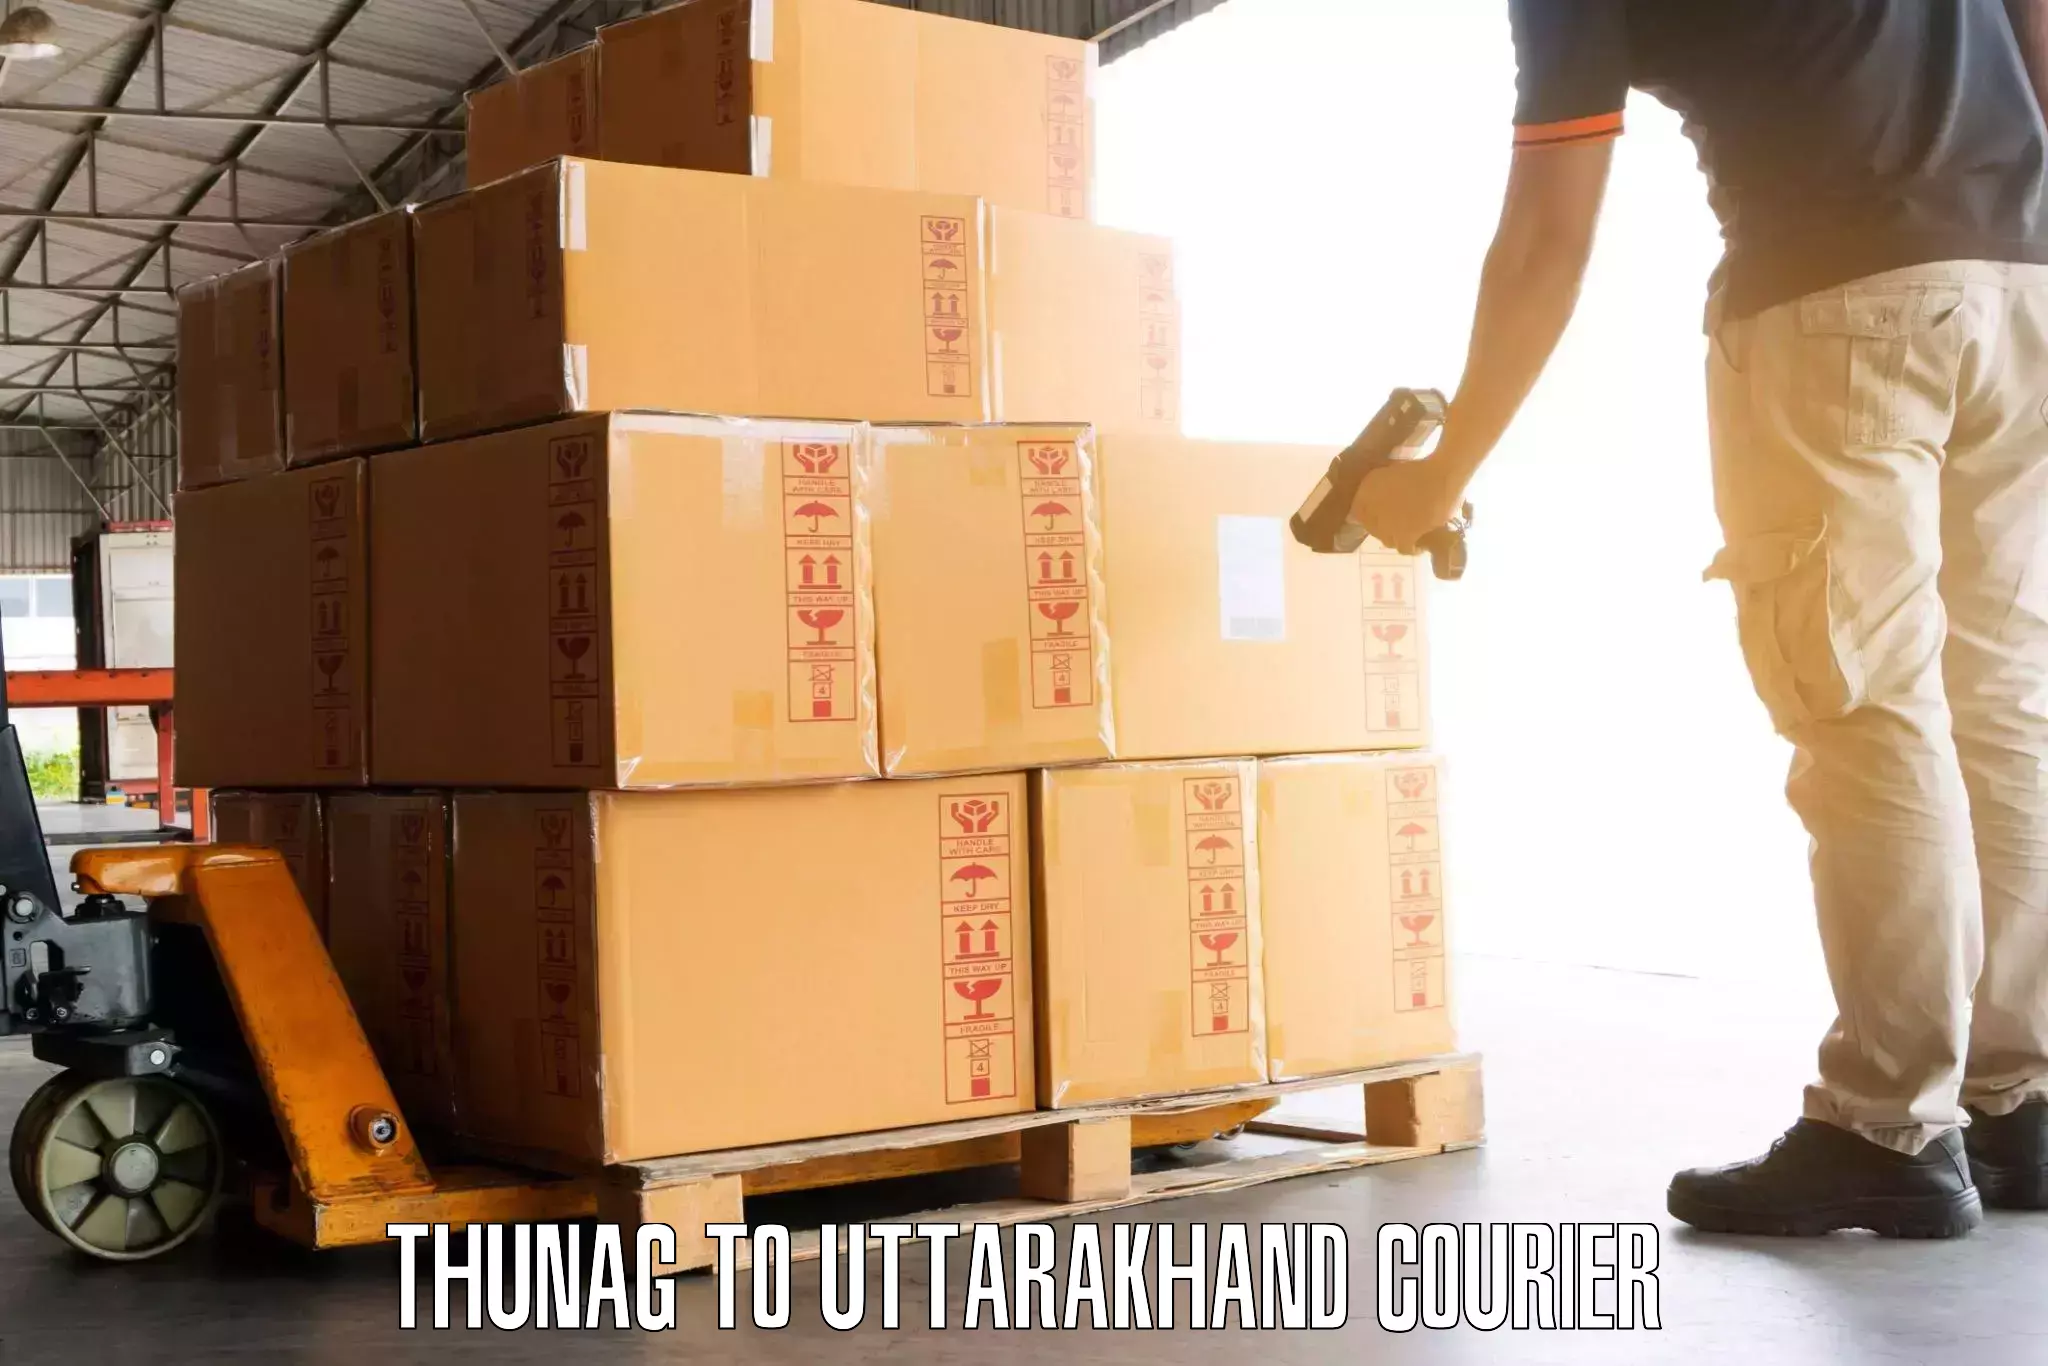 Luggage shipment processing Thunag to Uttarakhand